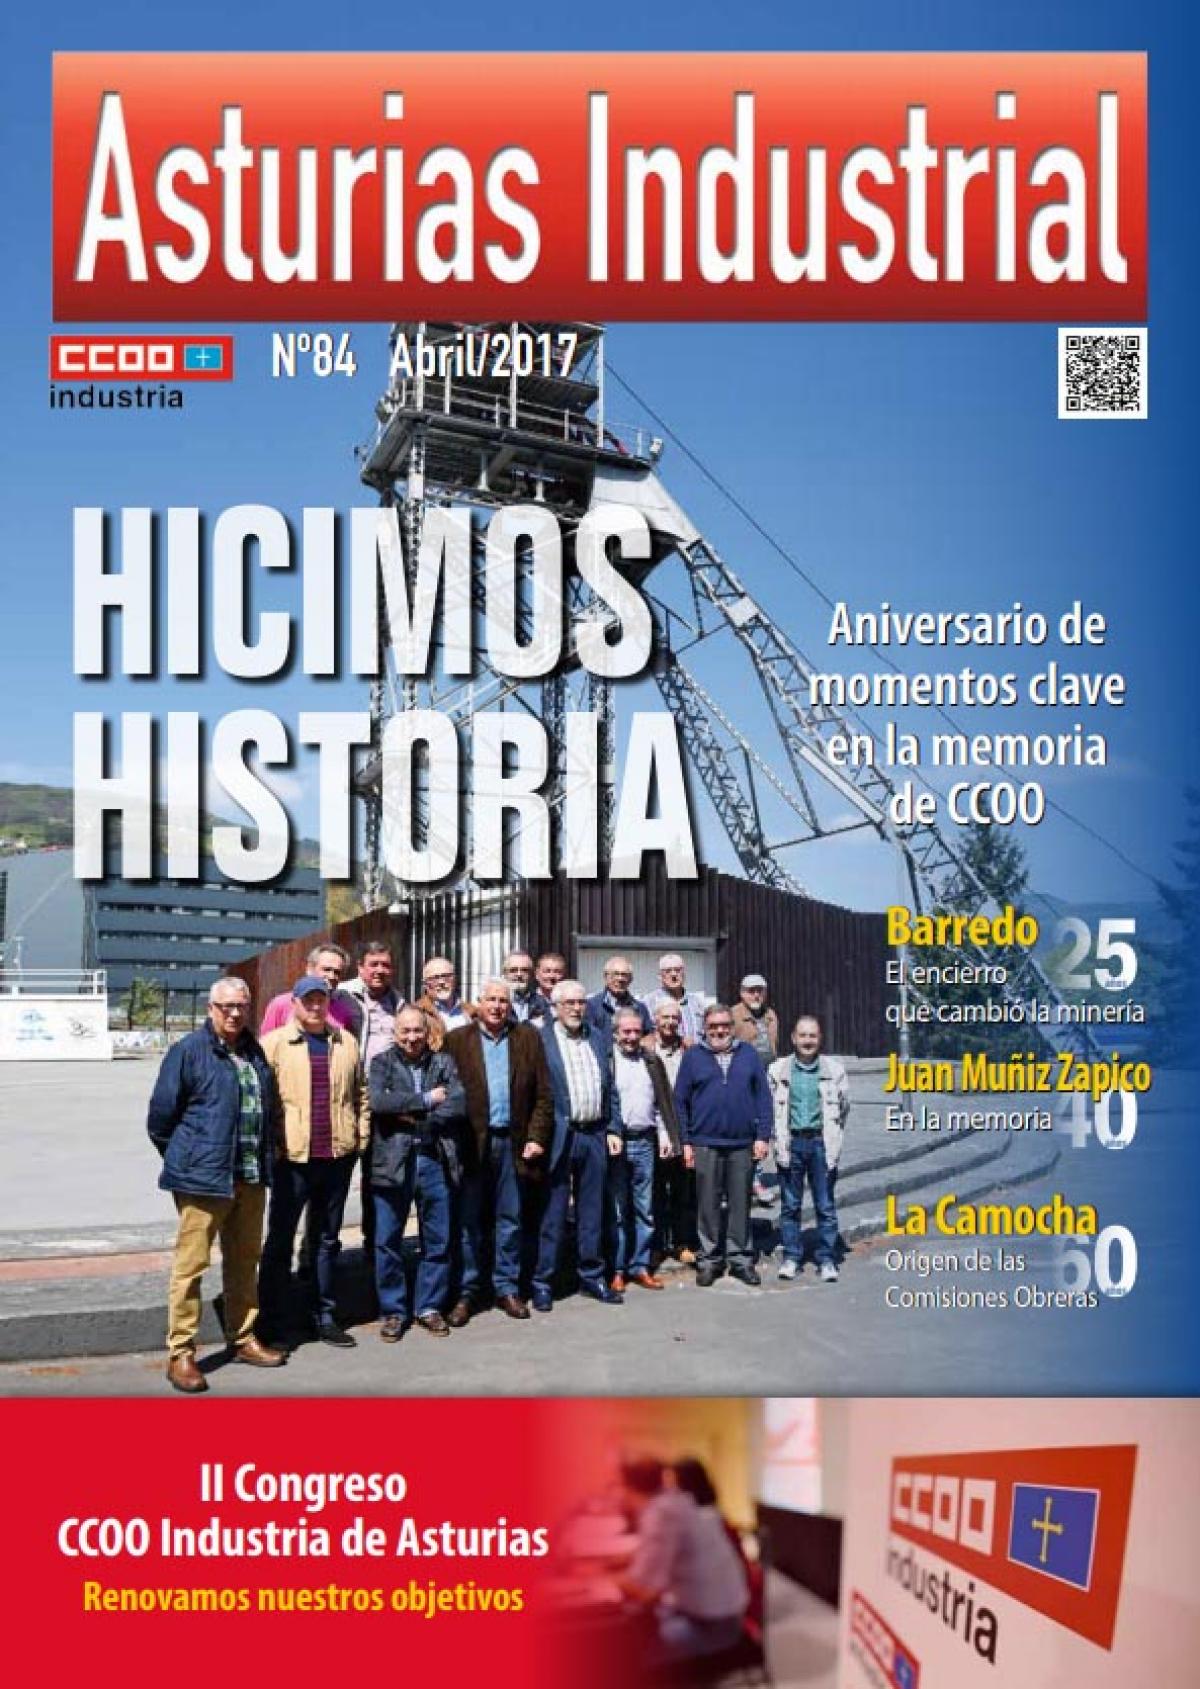 Asturias Industrial n 84